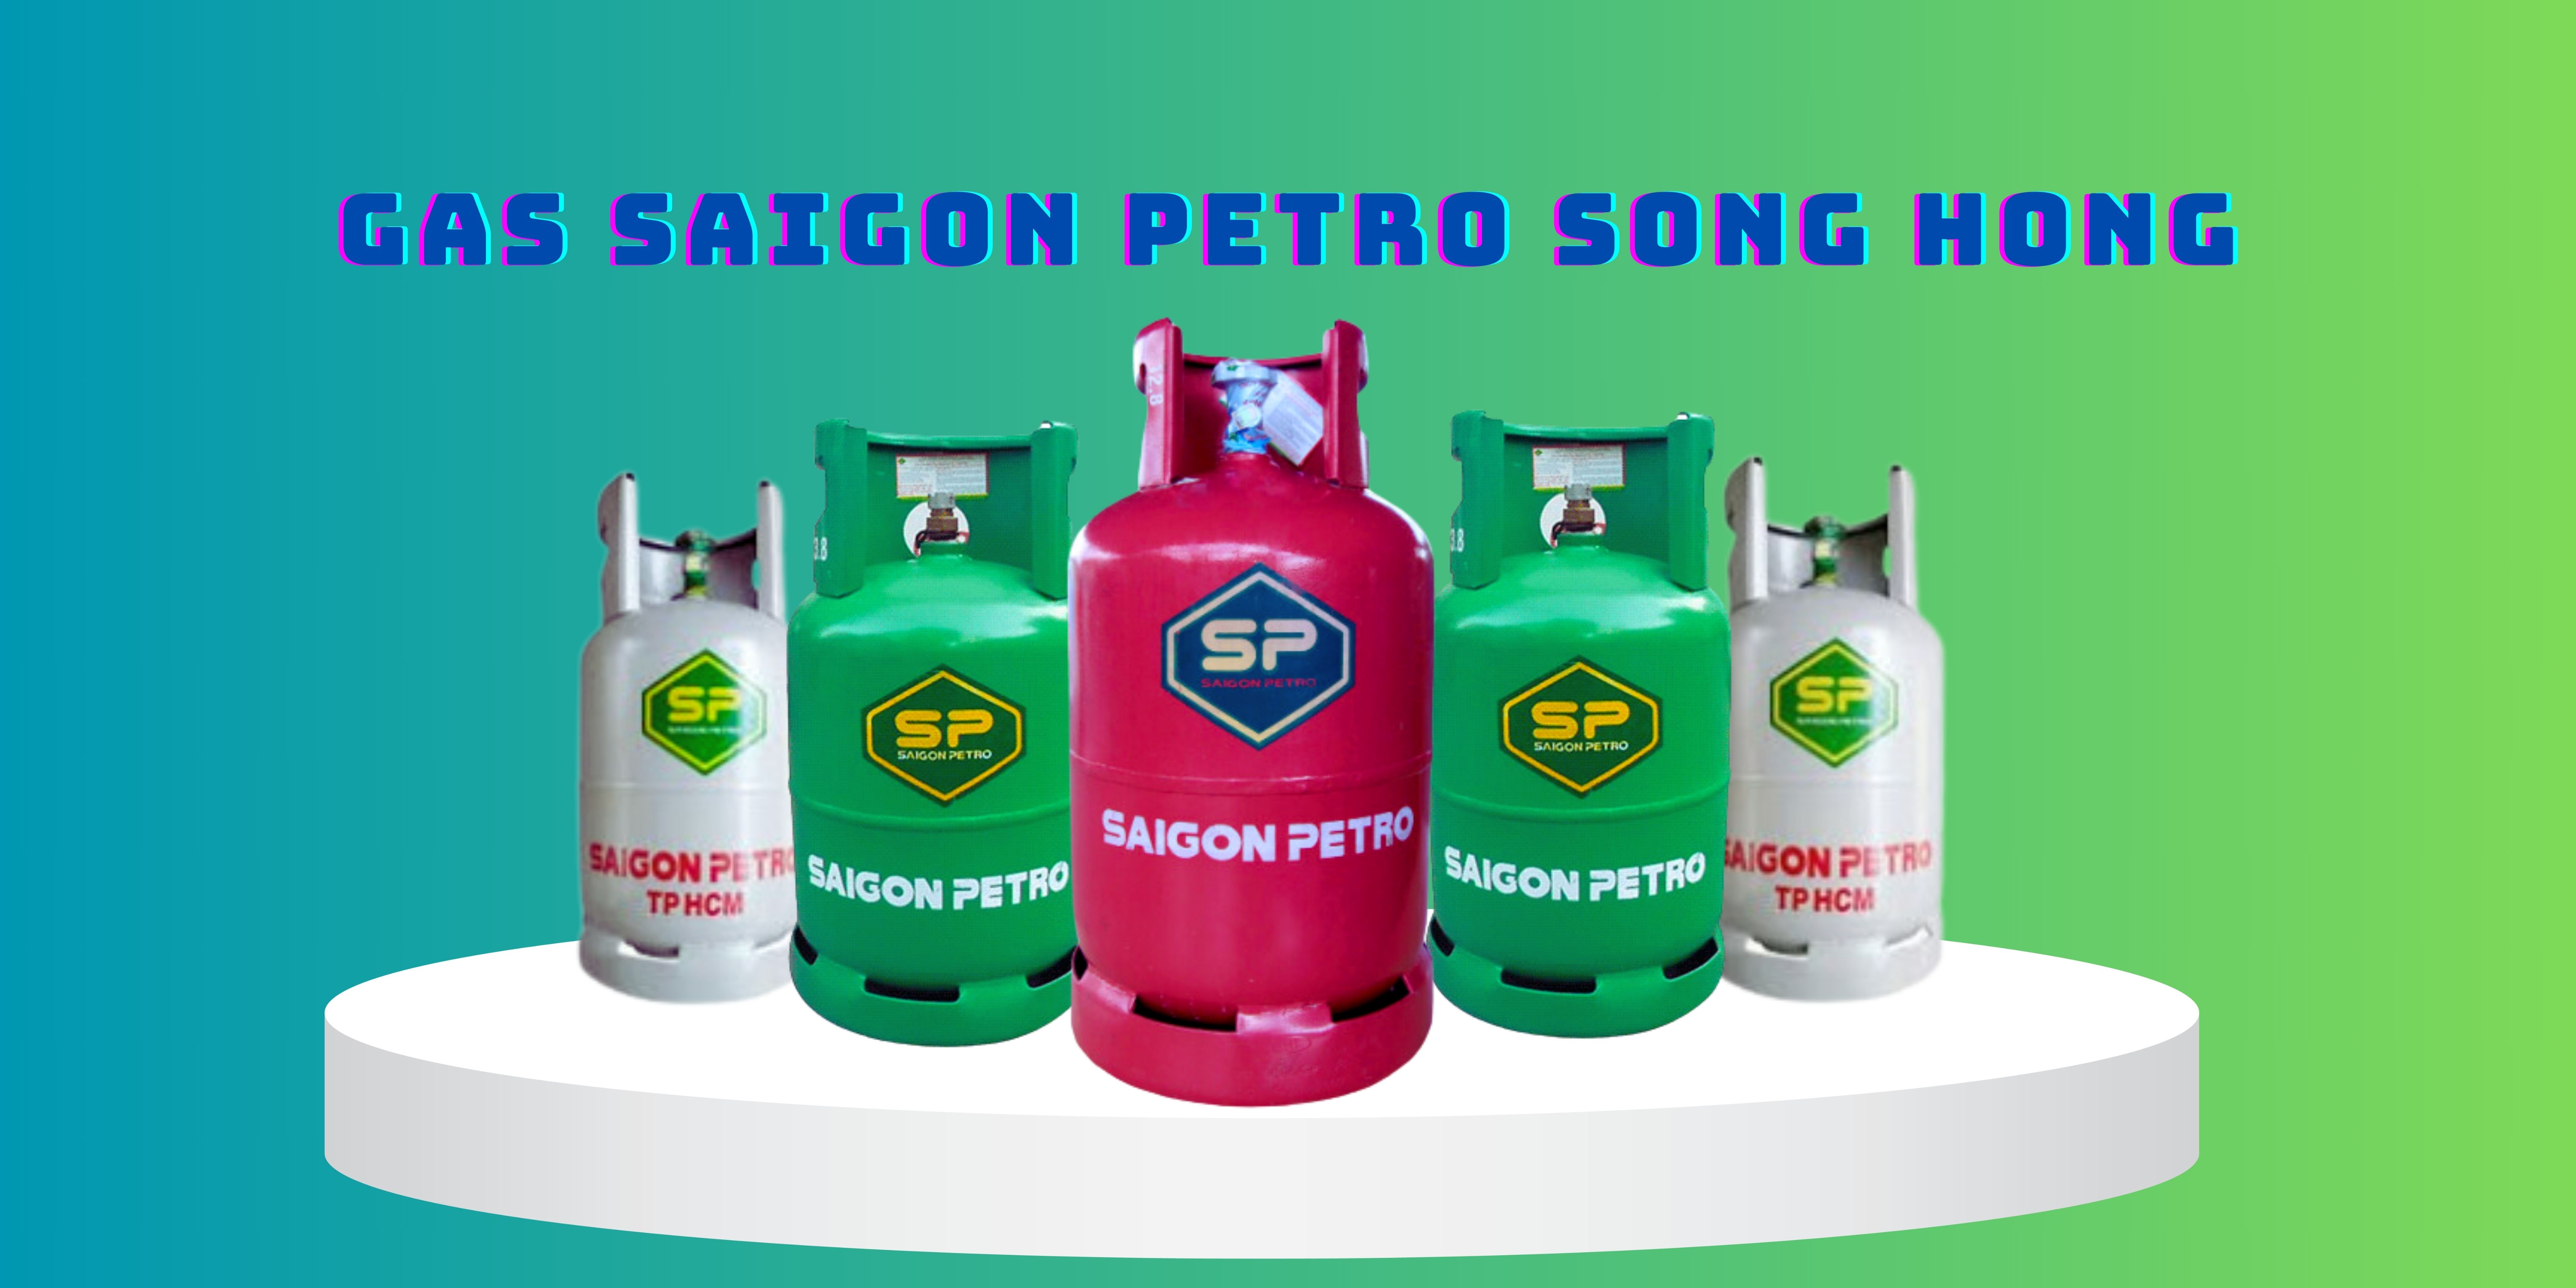 SONG HỒNG PETRO GAS